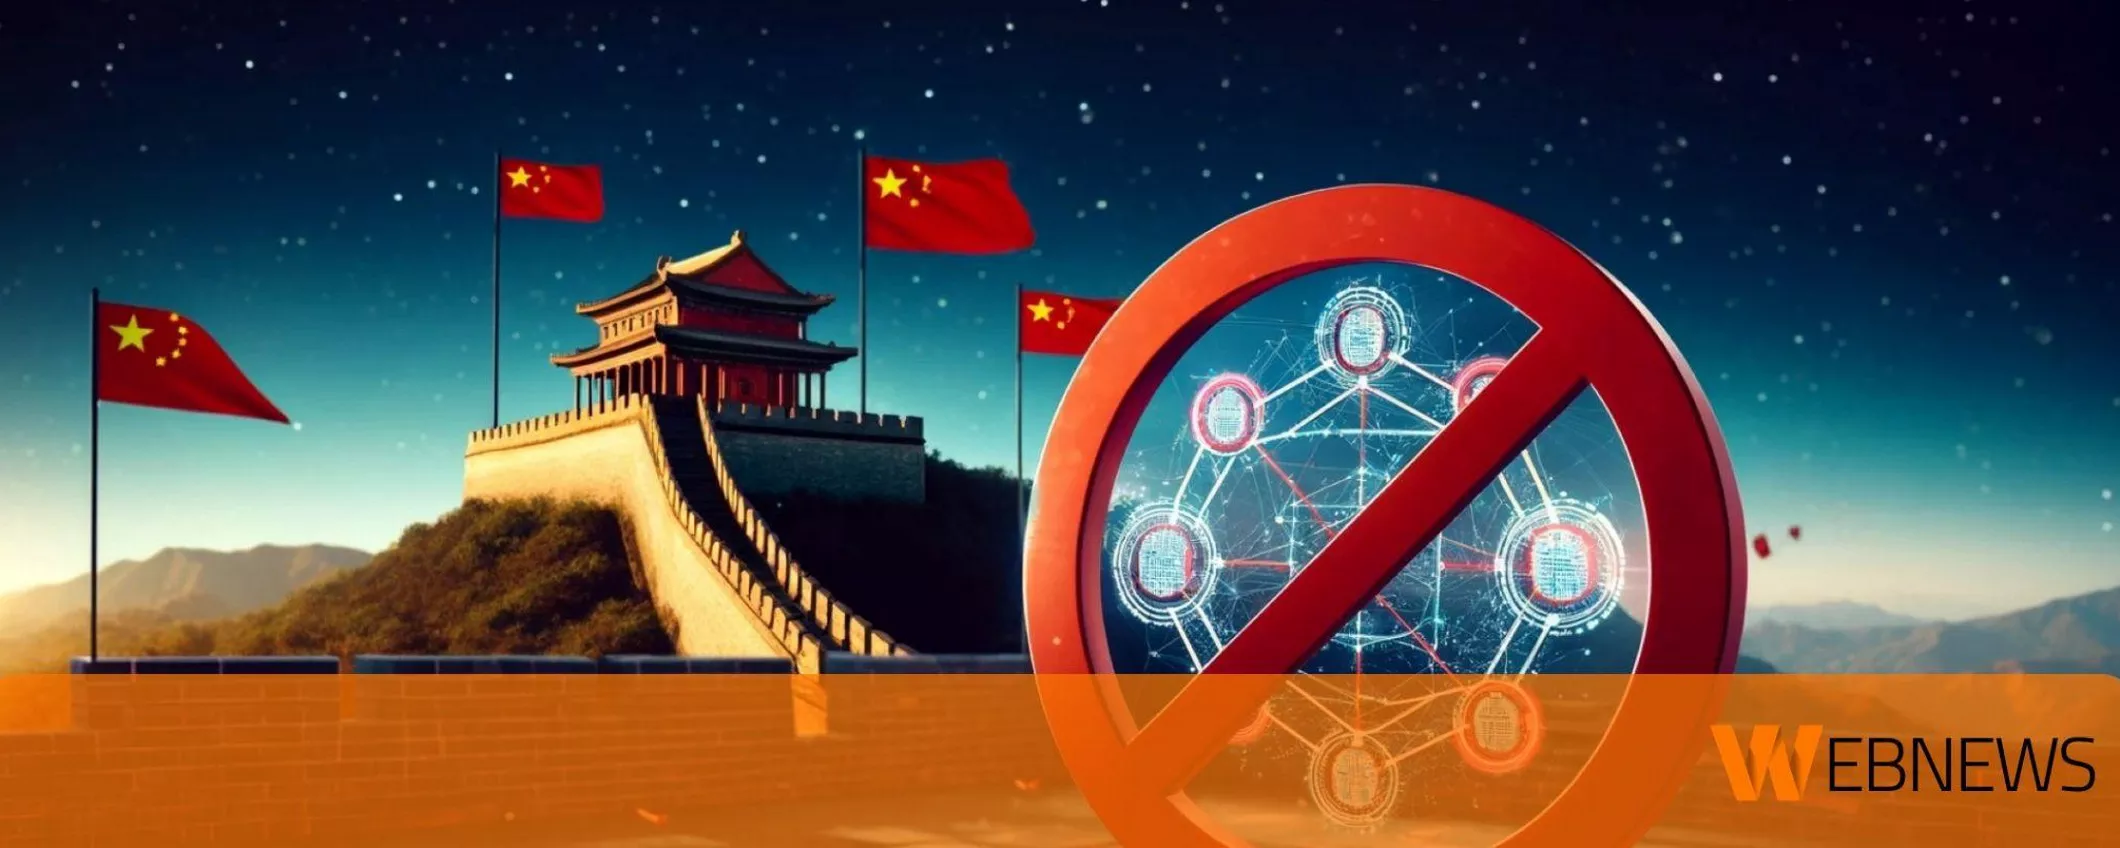 L'intelligenza artificiale ha previsto che la Cina vieterà le blockchain ad alto consumo